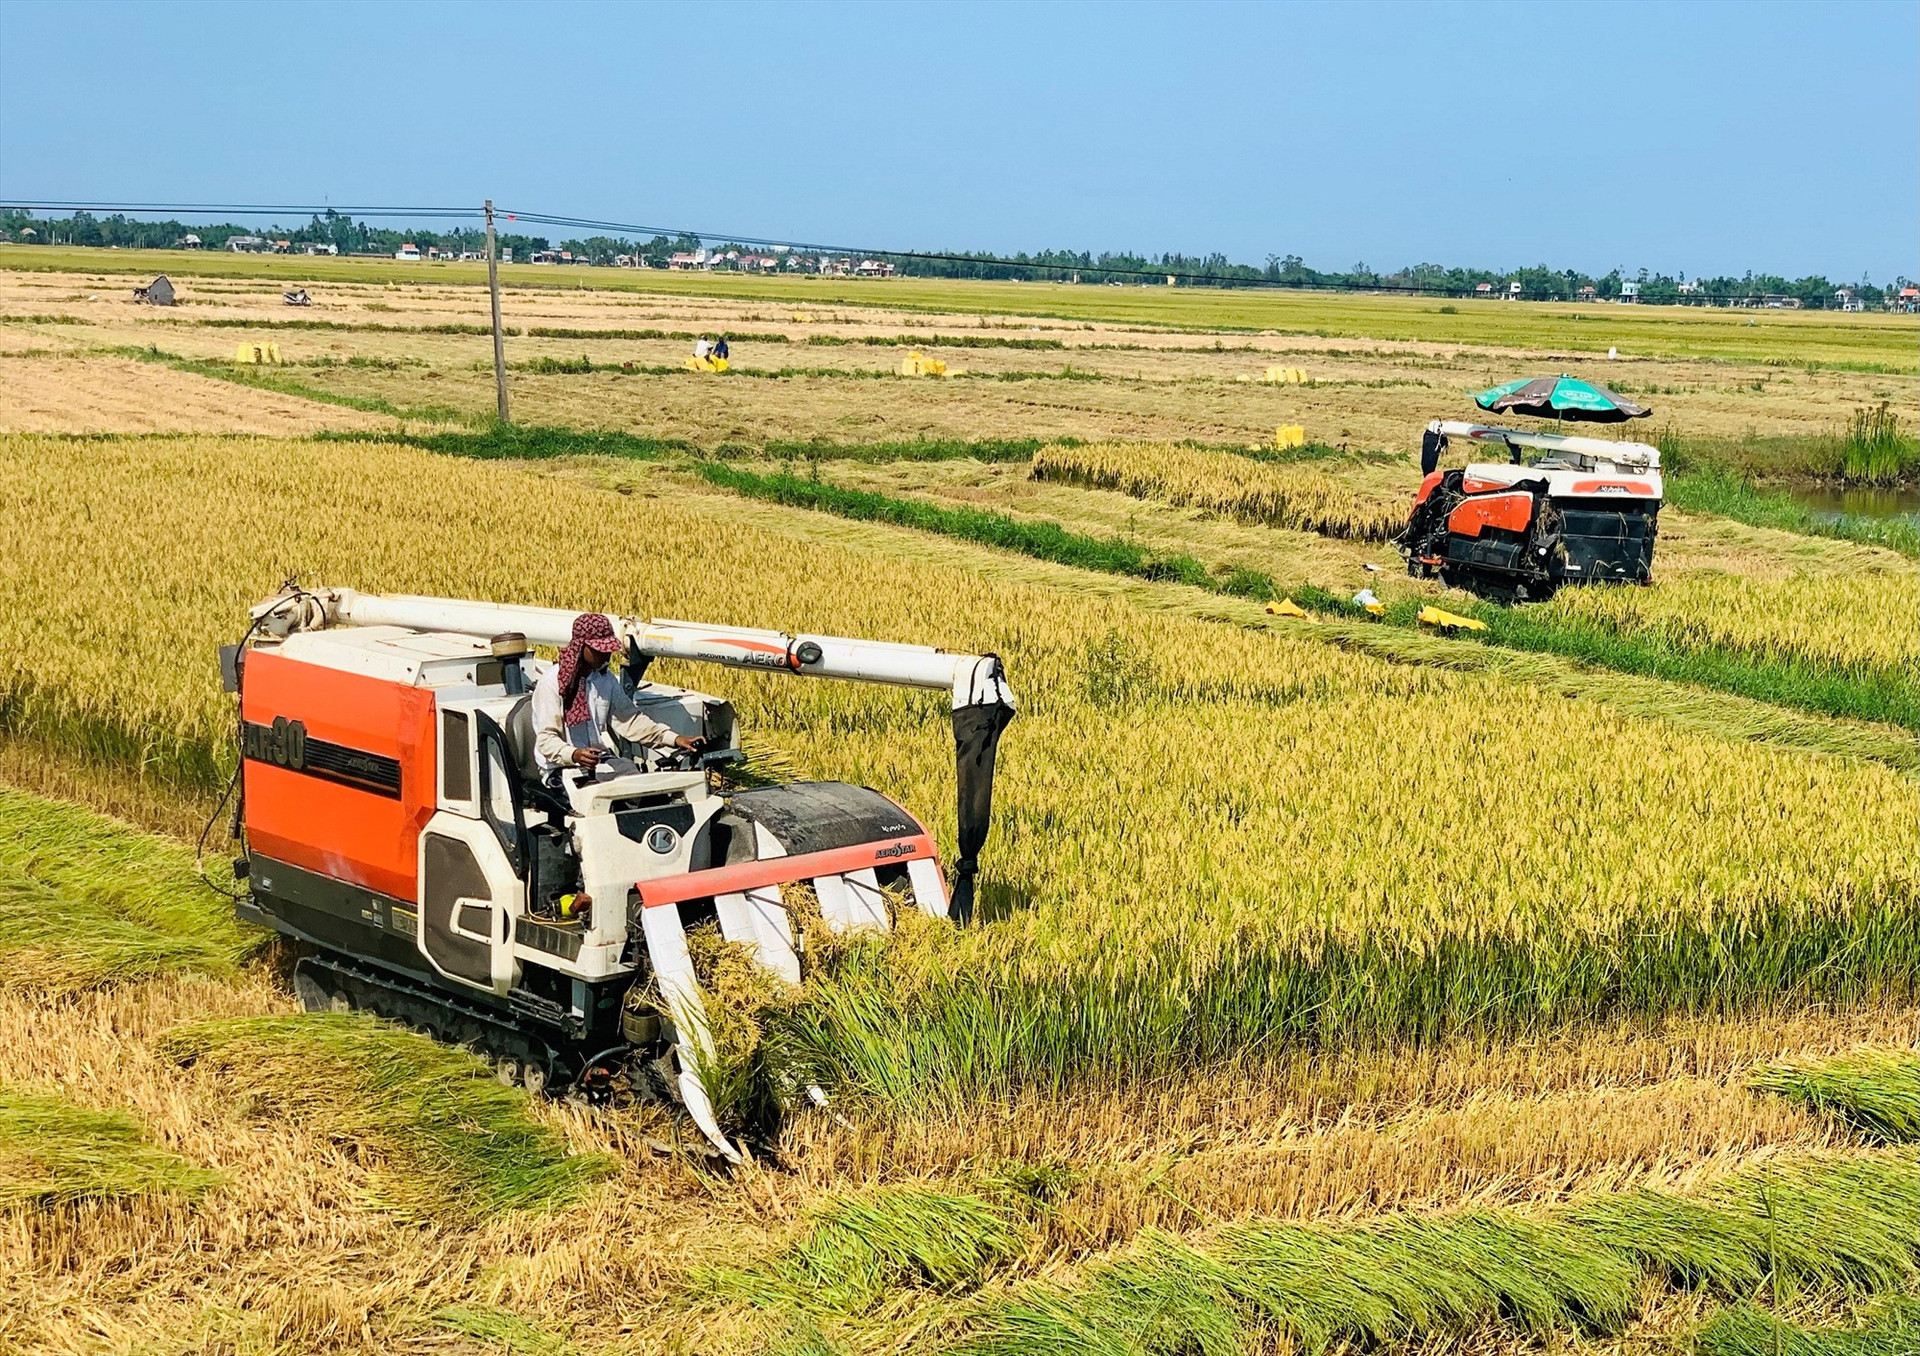 Thời gian tới, tỉnh sẽ duy trì và phát triển mô hình liên kết sản xuất lúa giống hàng hóa với quy mô diện tích ít nhất là 5.000ha/năm. Ảnh: MAI LINH